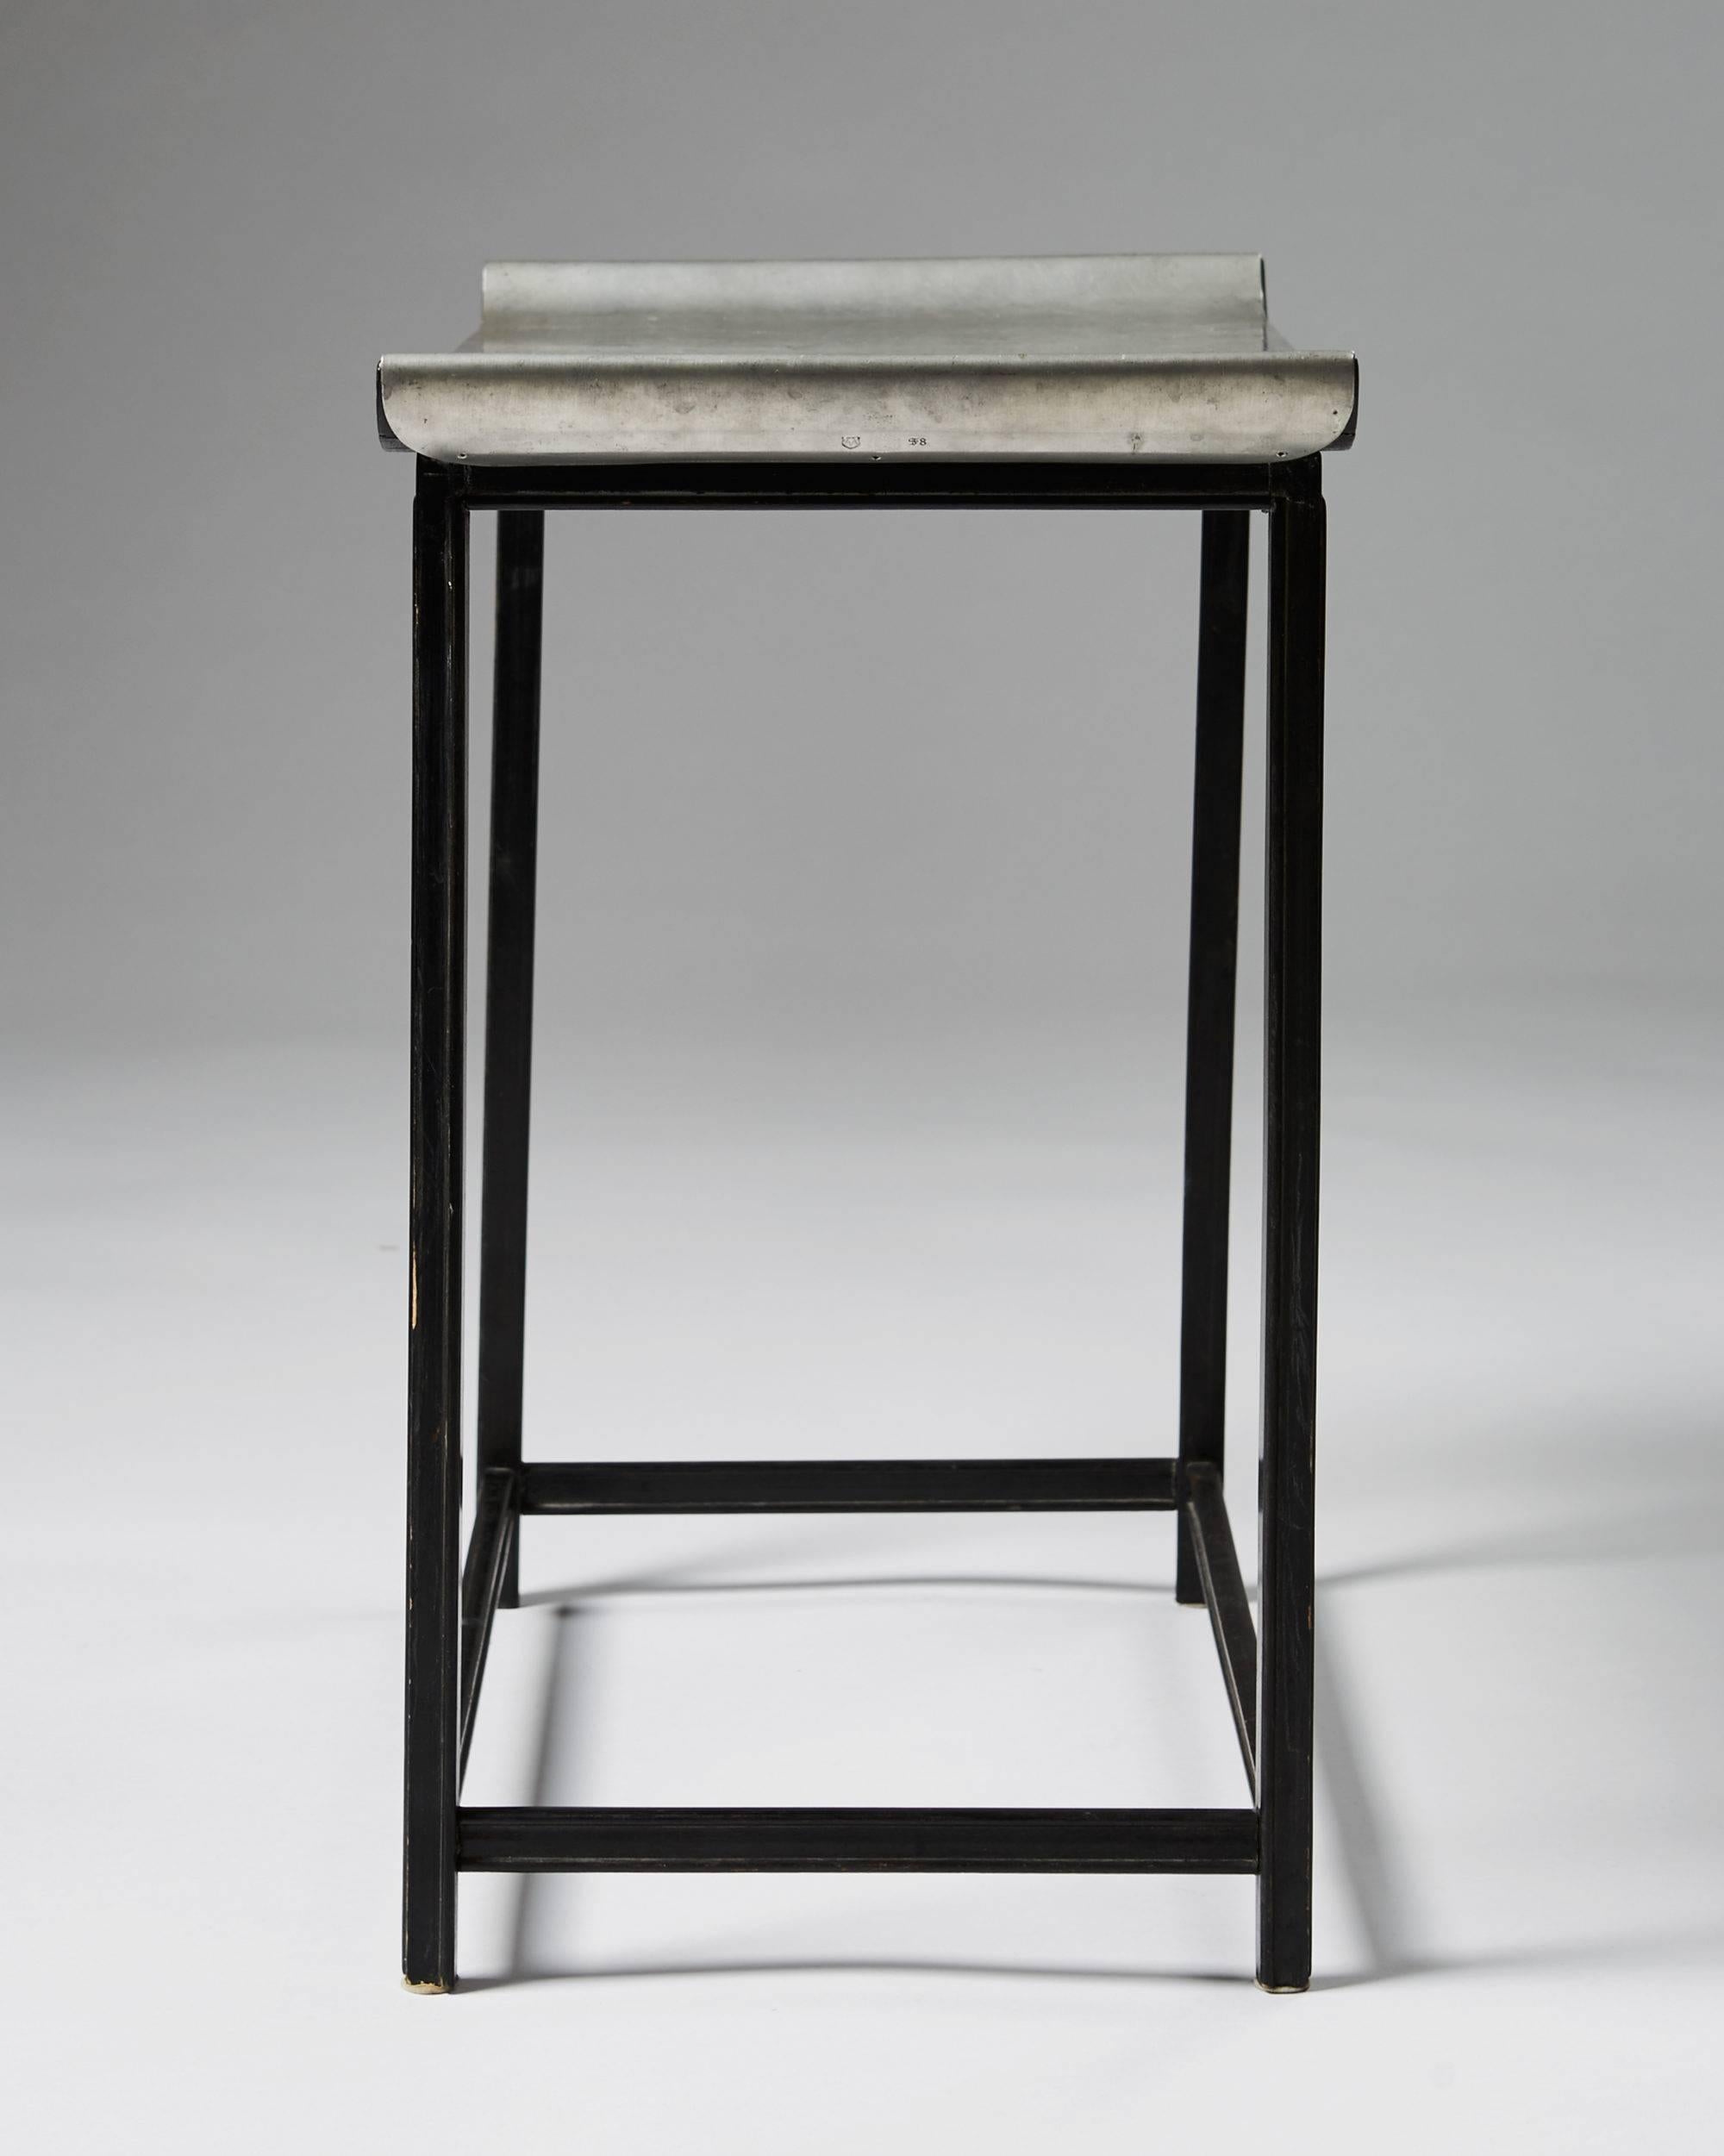 Occasional table designed by Nils Fougstedt and Björn Trägårdh for Svenskt Tenn, Sweden, 1932.